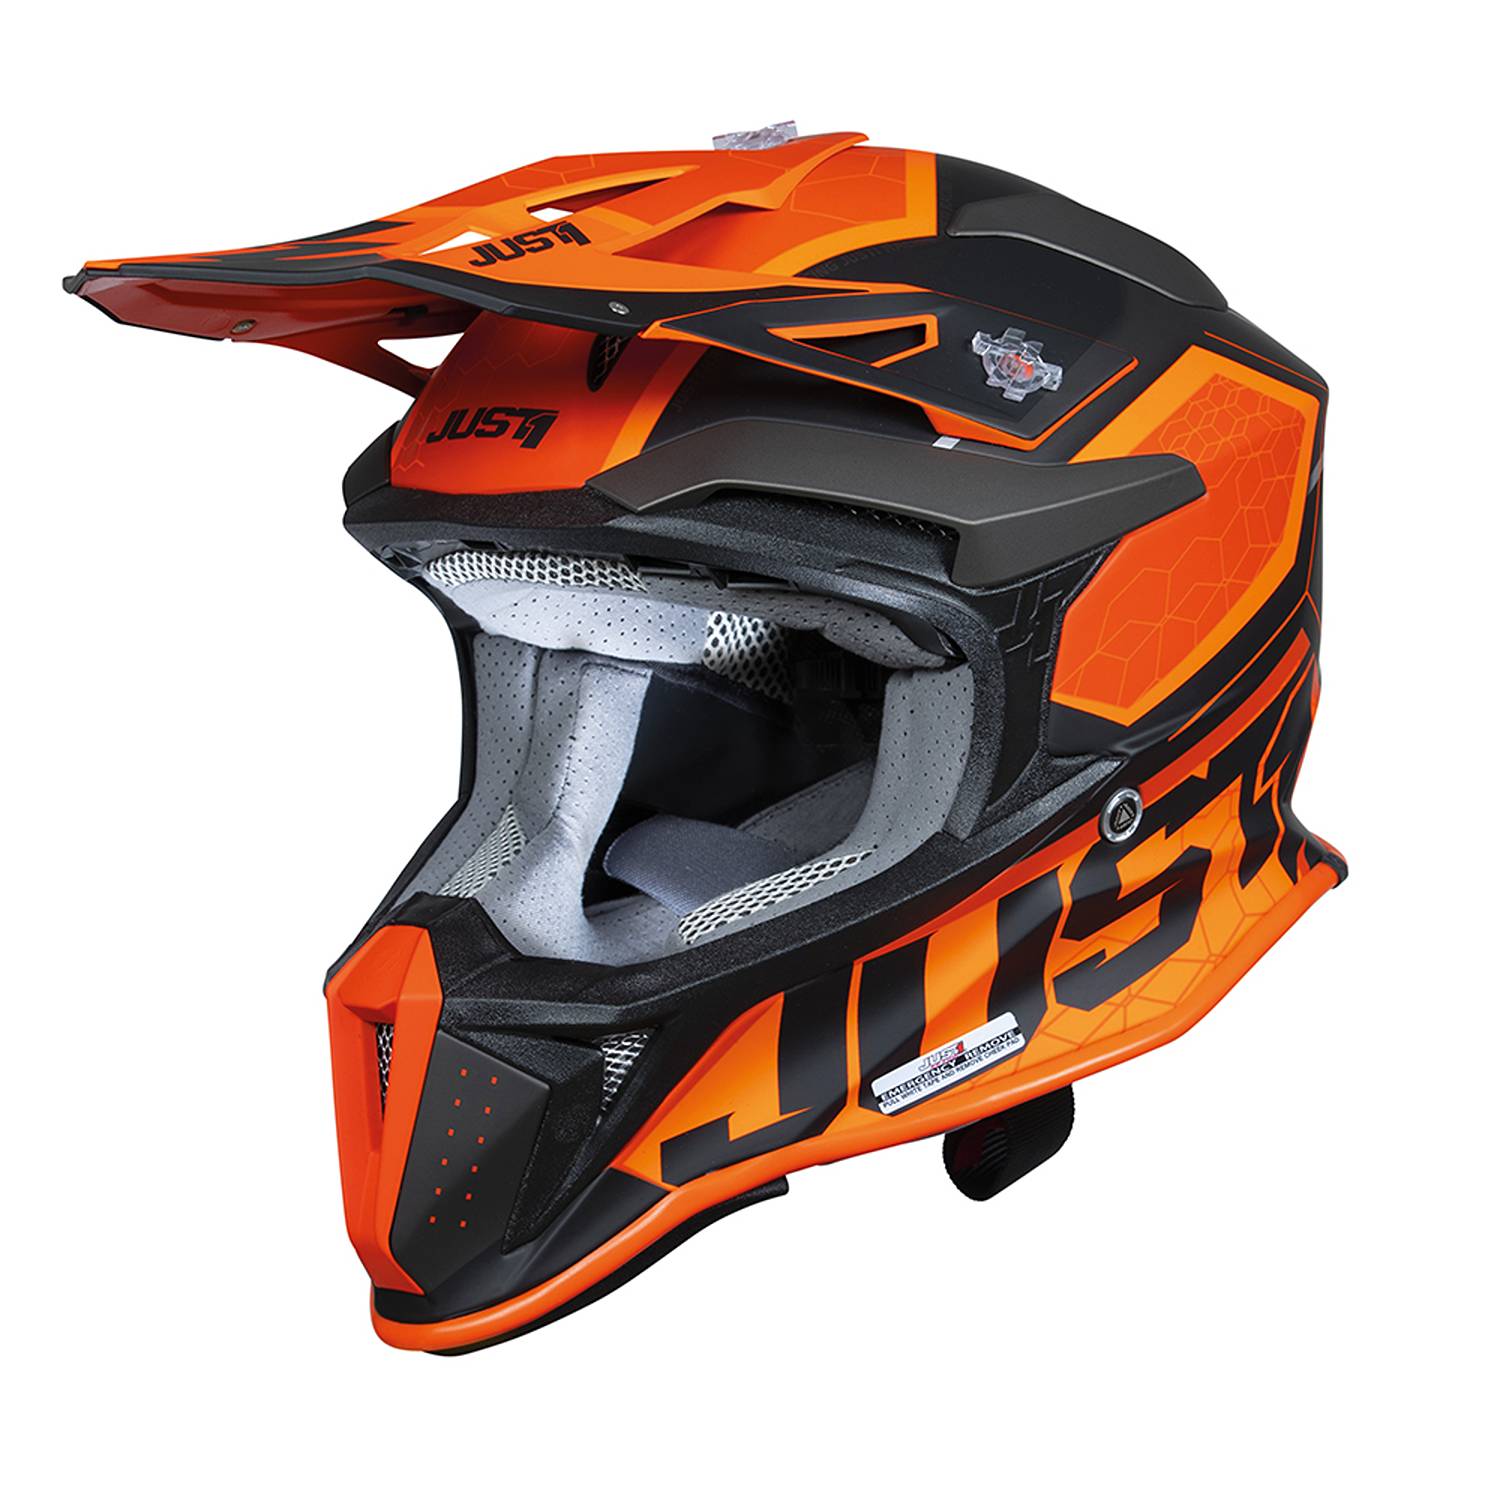 Image of Just1 J18-F Hexa Orange Black Matt Offroad Helmet Size XL EN